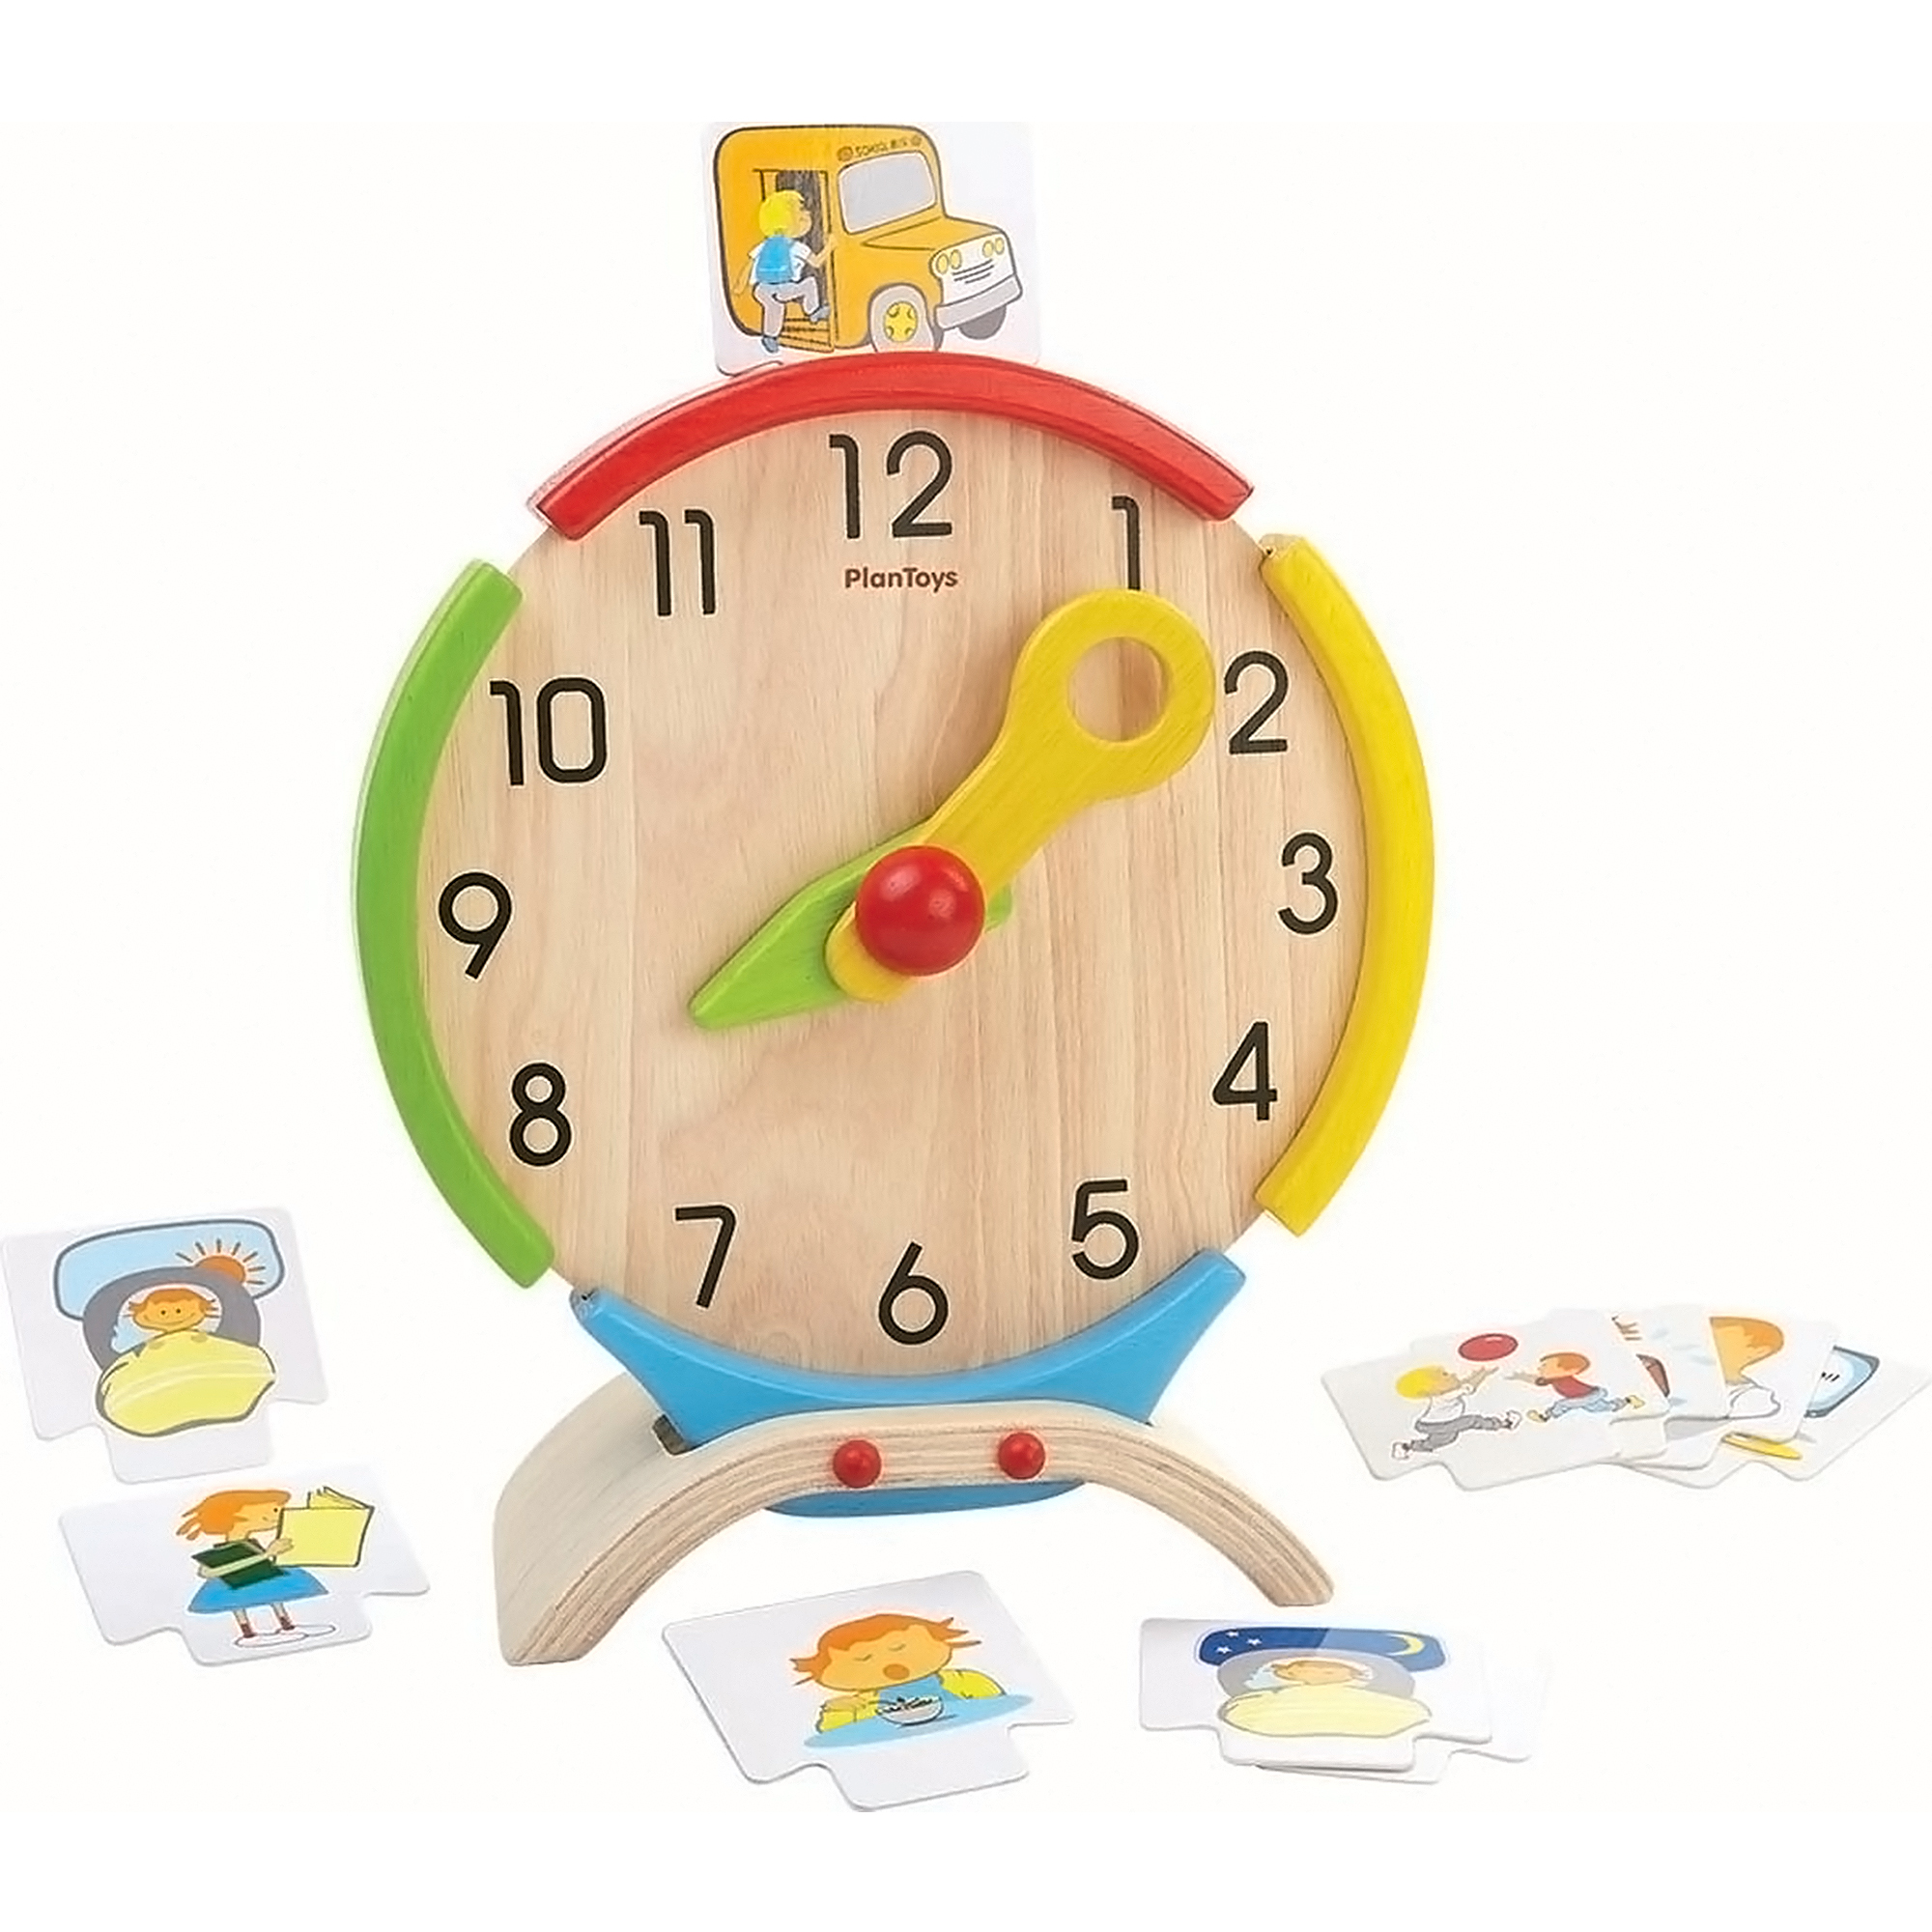 Купить игрушку часы. Часы Plan Toys. Игрушечные часы. Часы для детского сада. Часы детские обучающие.